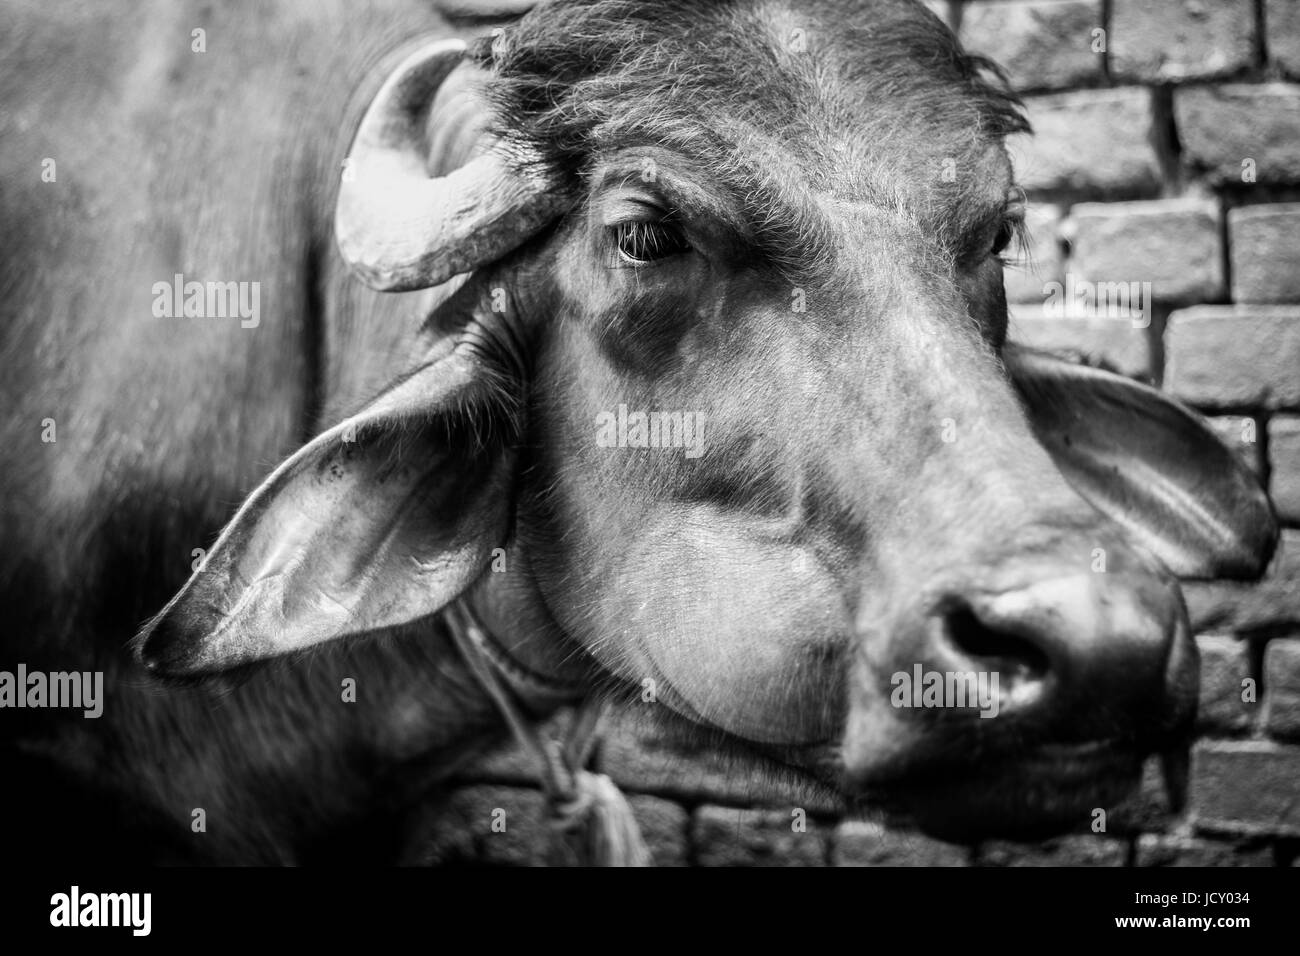 Animale e headshot immagine ritratto di Asian Bufalo d'acqua. Un incredibile in bianco e nero di close-up di un testa di buffalo. Un potente bestia da soma in Asia Foto Stock